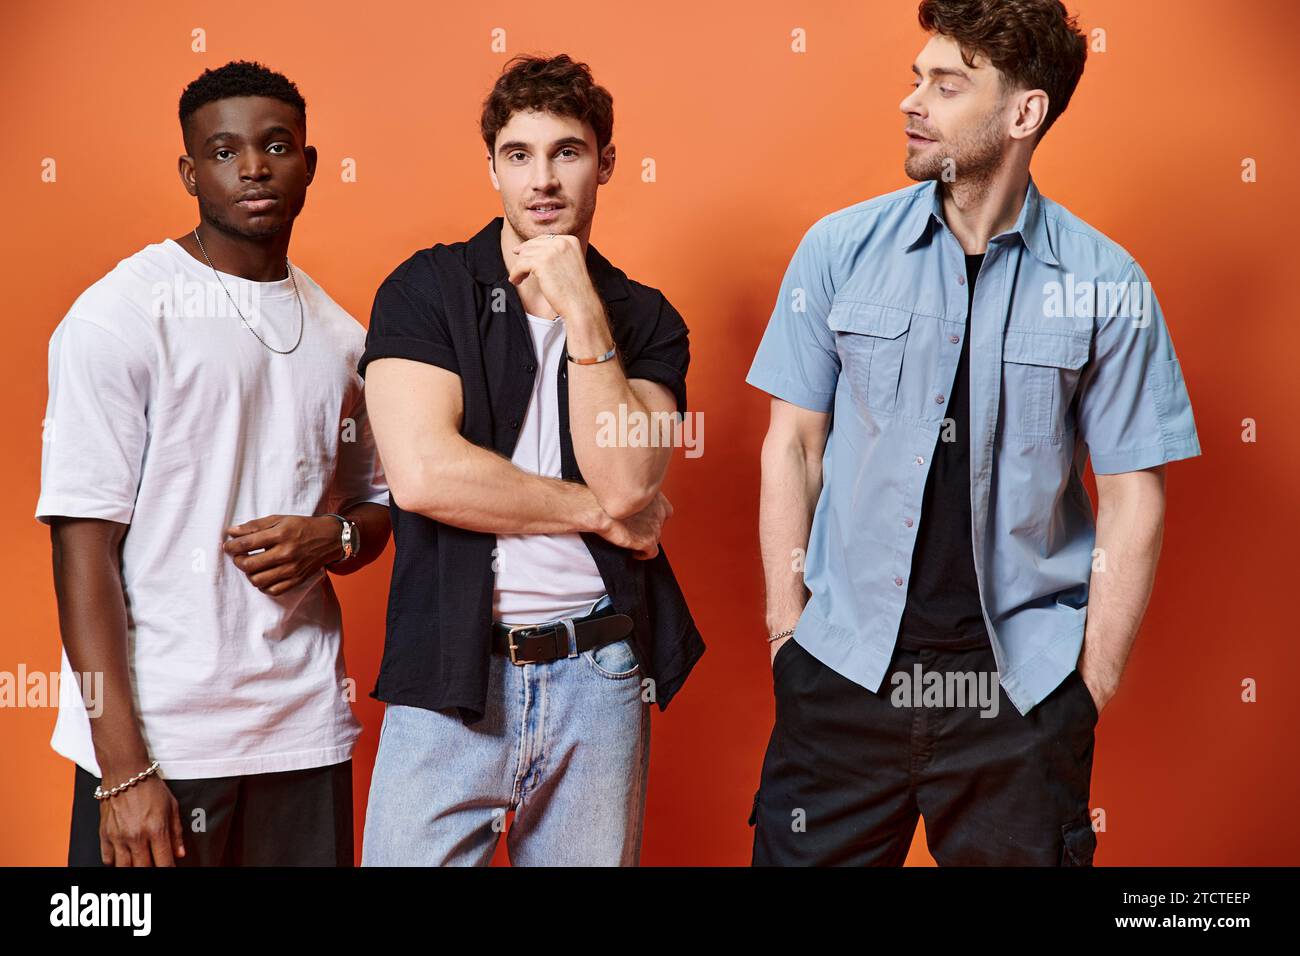 Gut aussehende, multirassische männliche Models in stilvoller Stadtkleidung, die vor orangefarbenem Hintergrund posieren Stockfoto